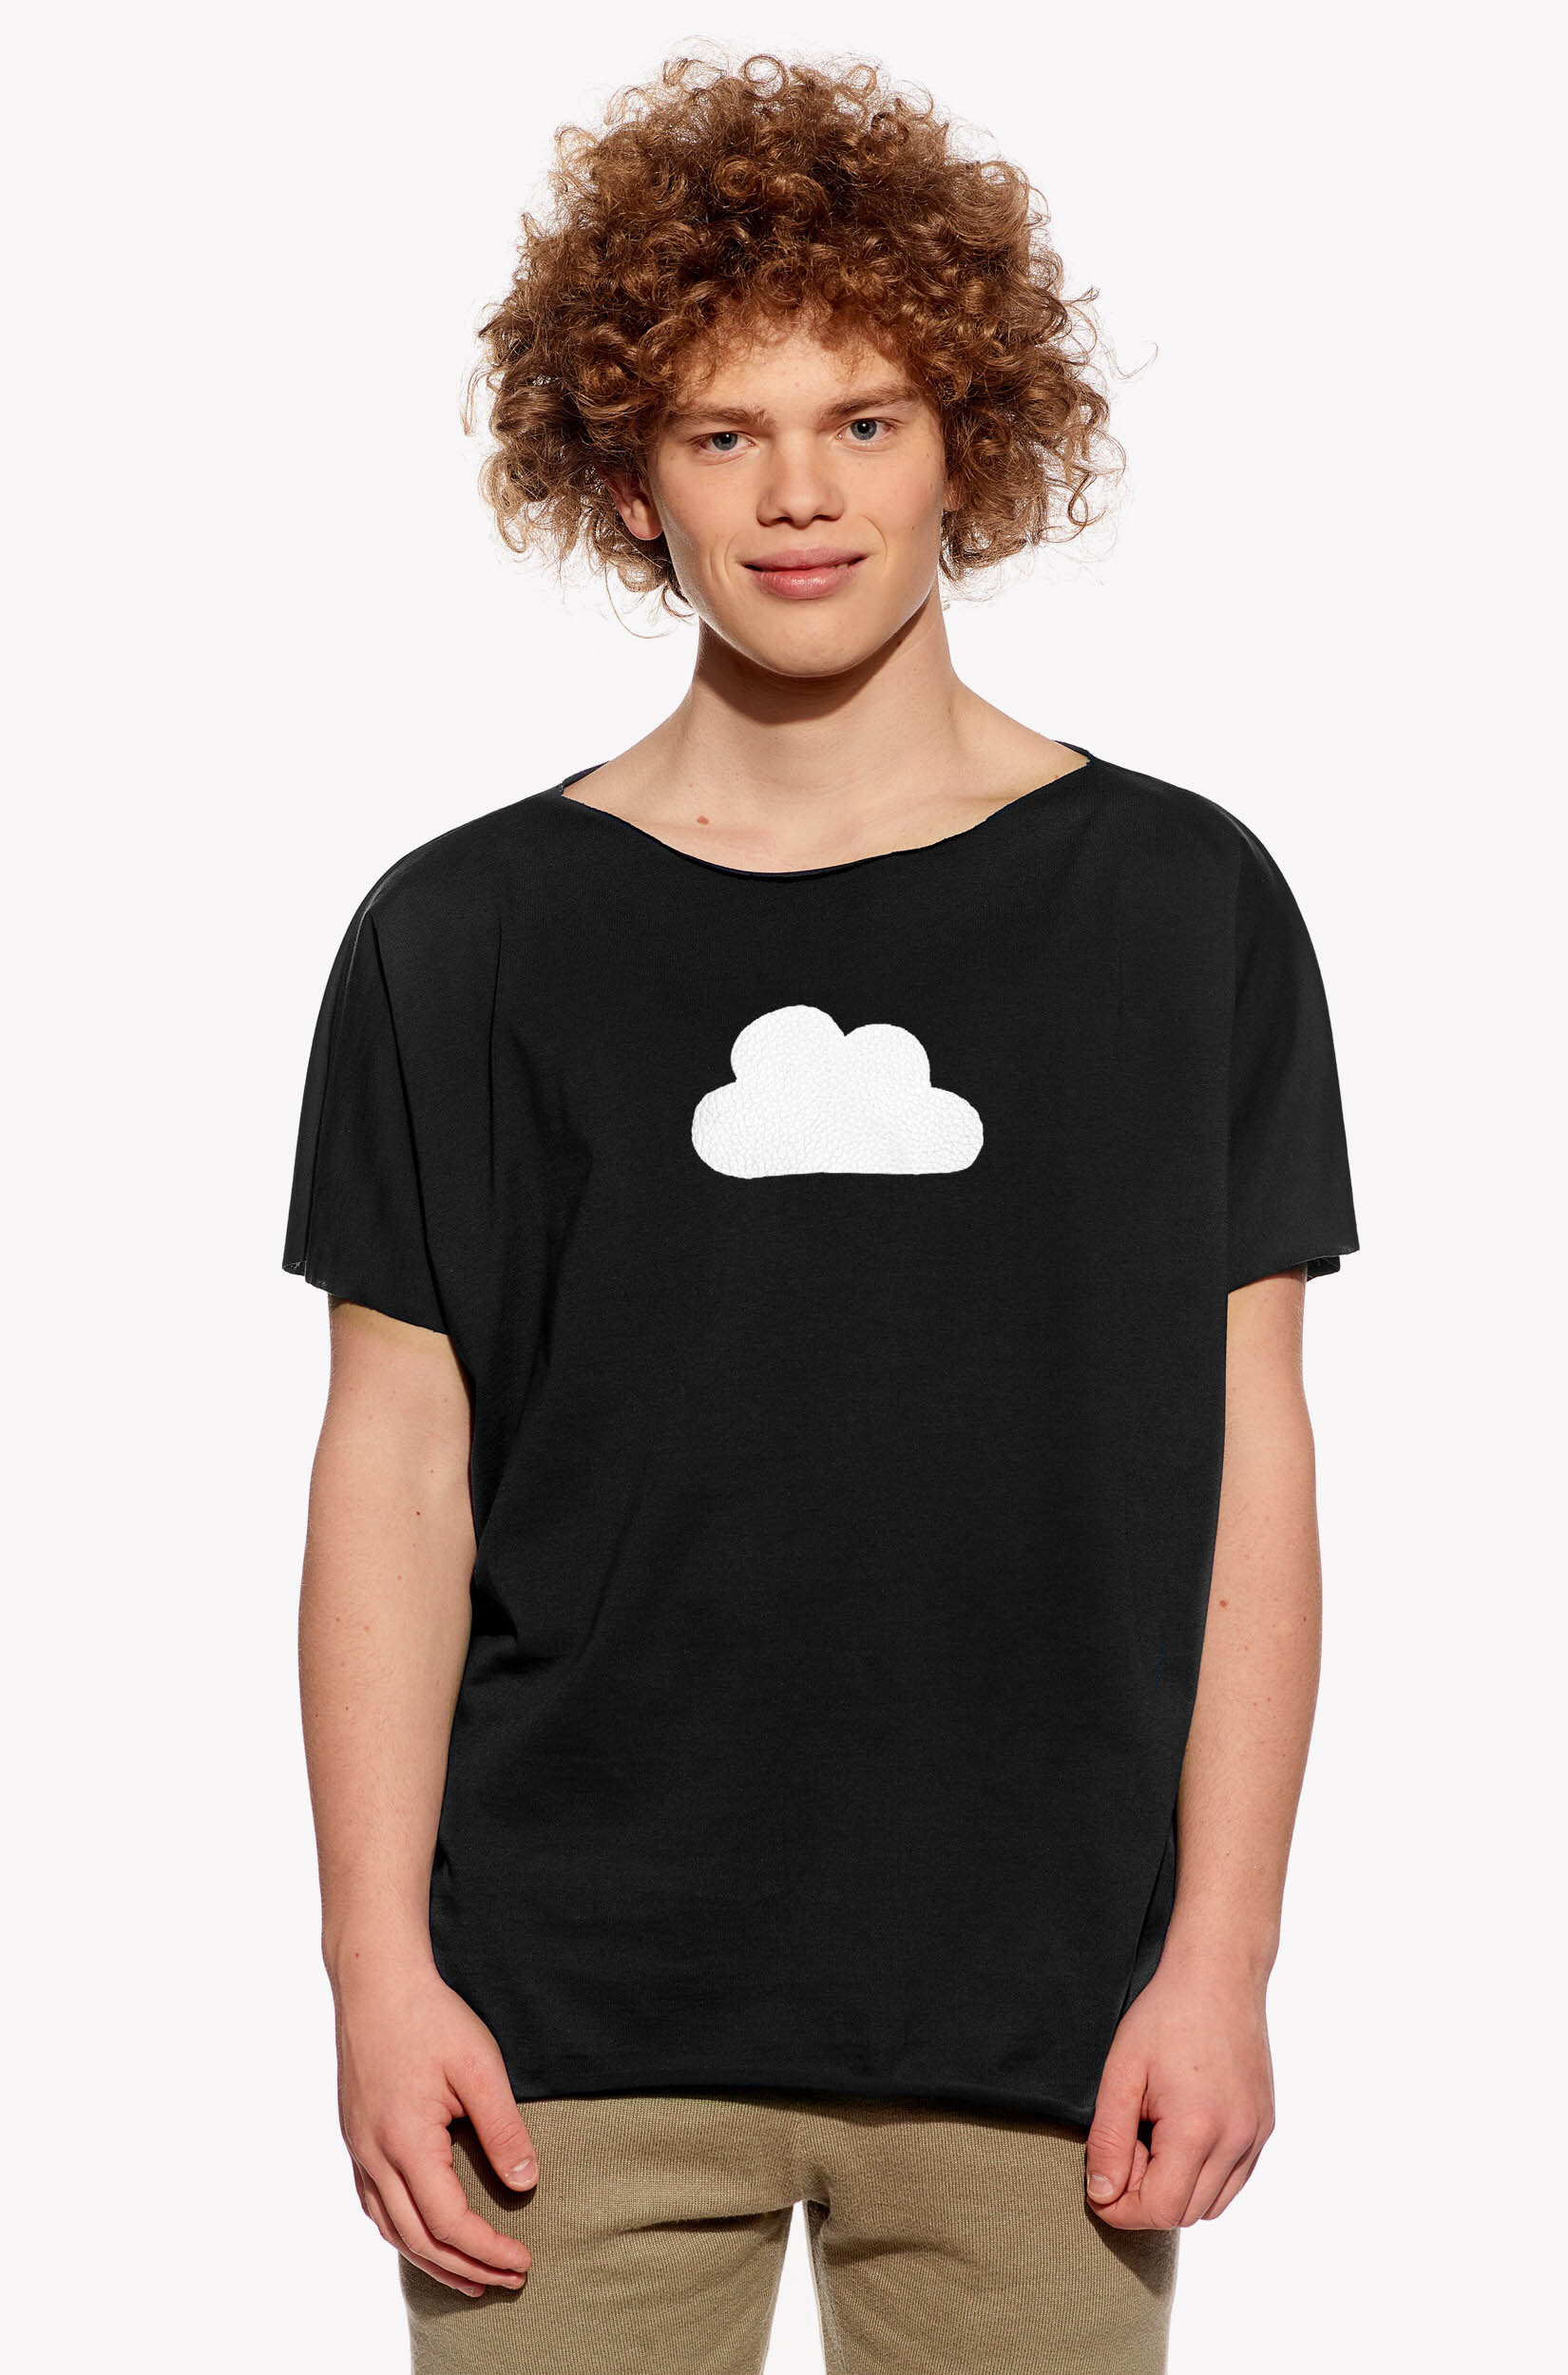 Pólók felhővel